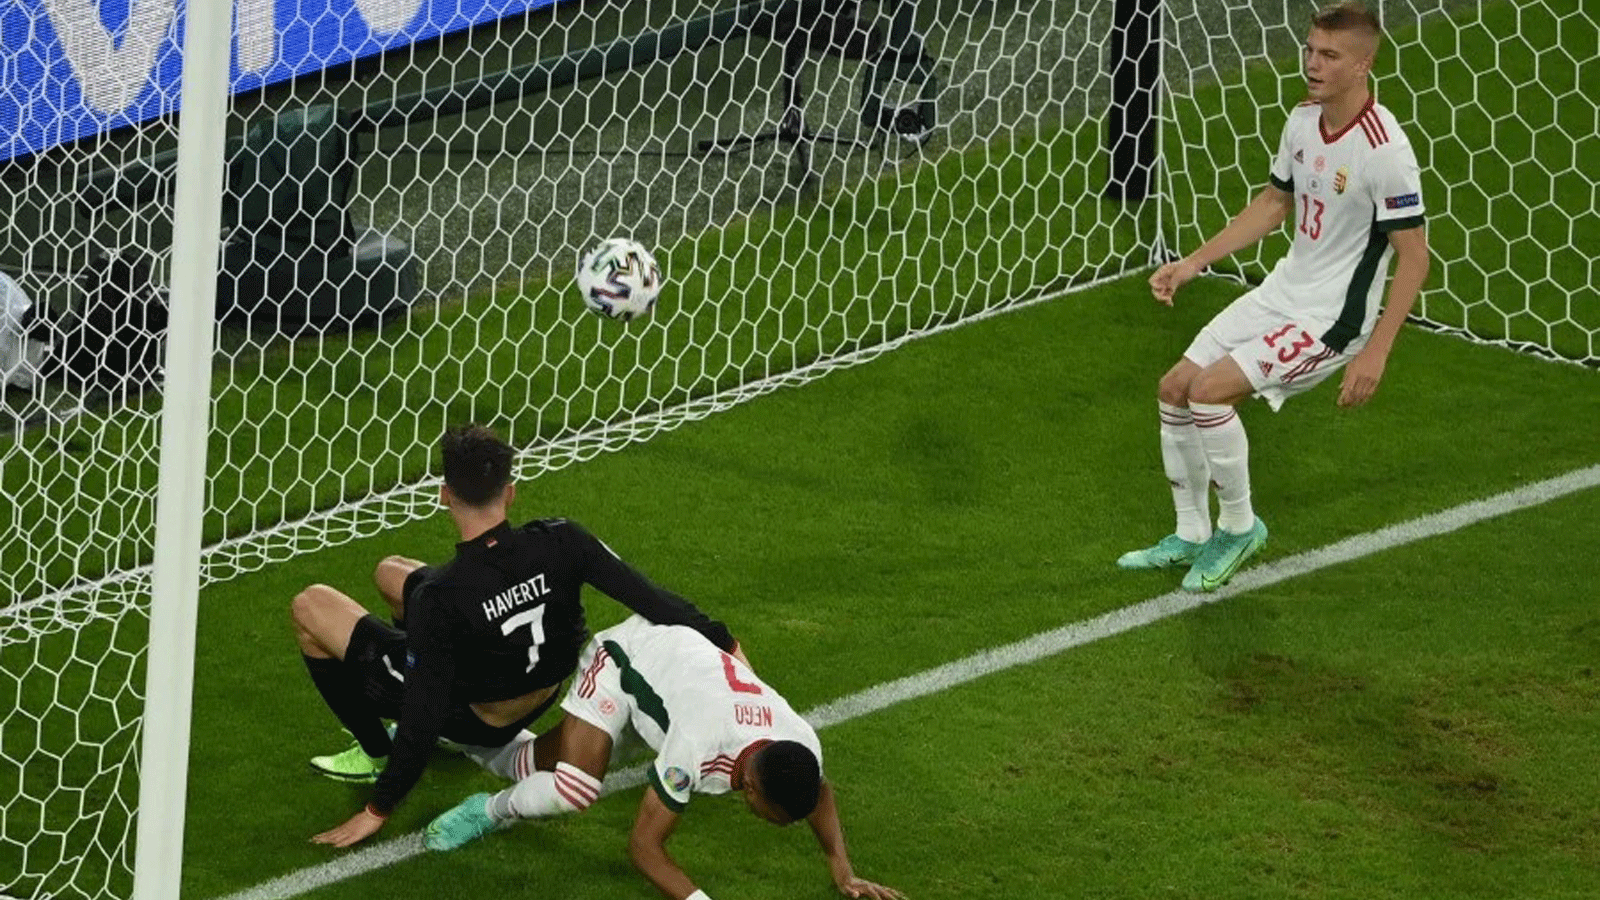 المهاجم الألماني كاي هافرتز يُسجِّل الهدف الأول لفريقه خلال مباراة كرة القدم في المجموعة السادسة UEFA EURO 2020 بين ألمانيا والمجر في ملعب أليانز أرينا في ميونيخ.